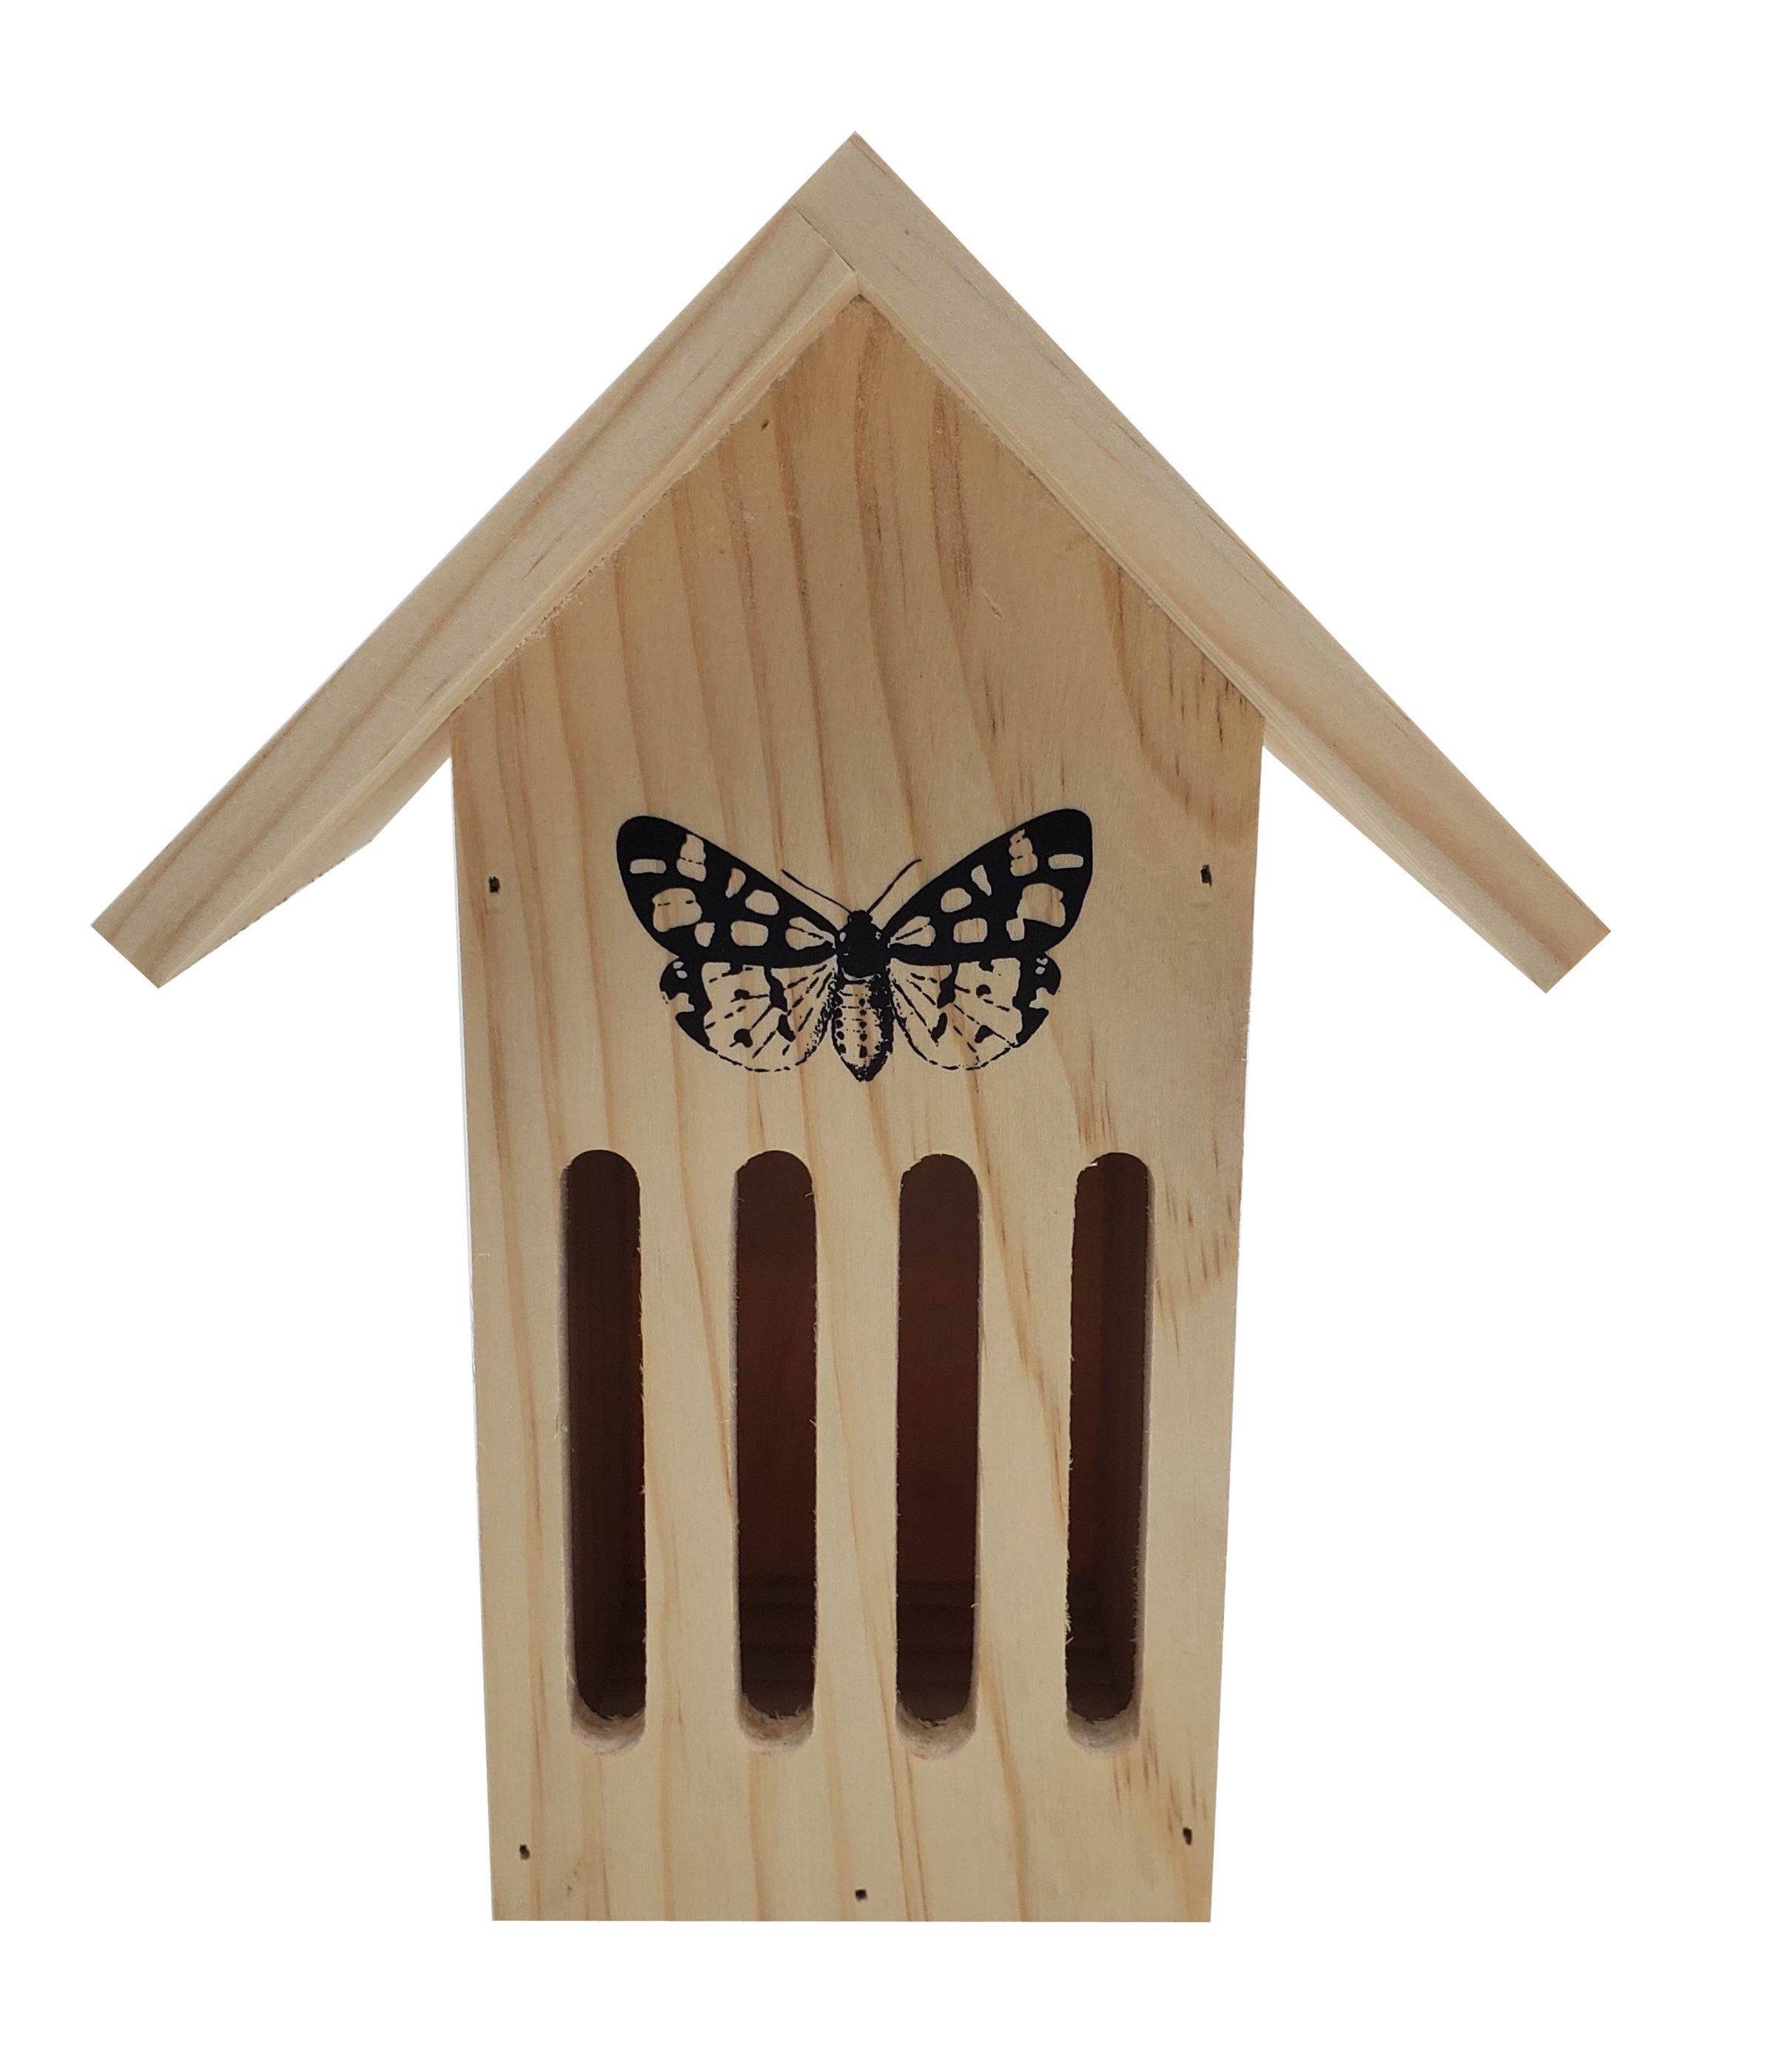 Dehner Insektenhotel Runa, wetterfest, ca. 17 x 23 x 12 cm, braun, Insektenhaus für Schmetterlinge aus FSC®-zertifiziertem Kiefernholz